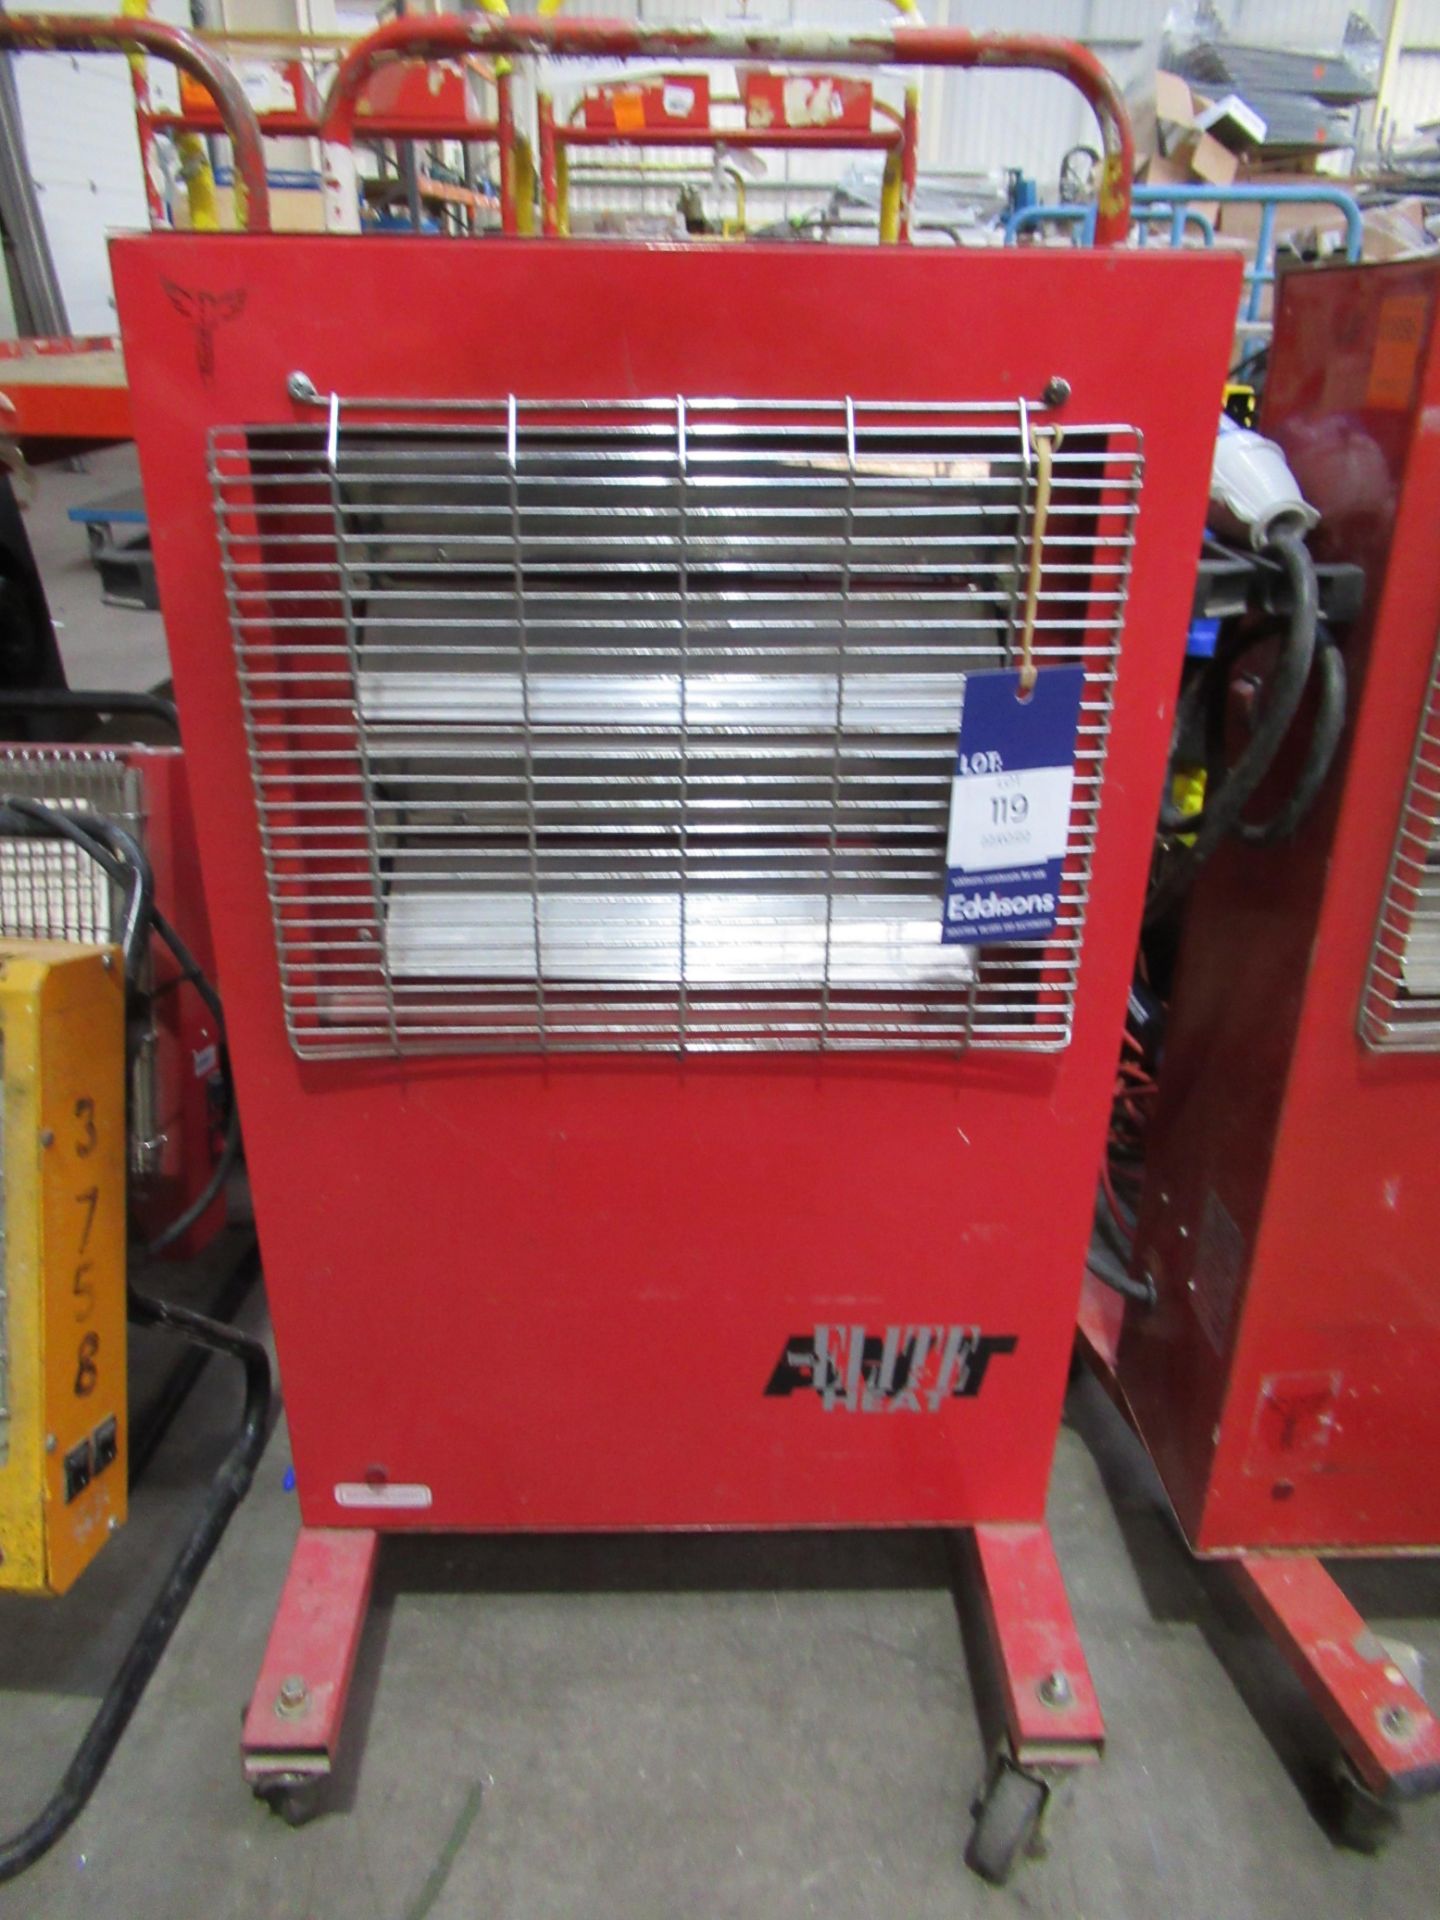 Elite Heat AVT 110V Heater on Castors